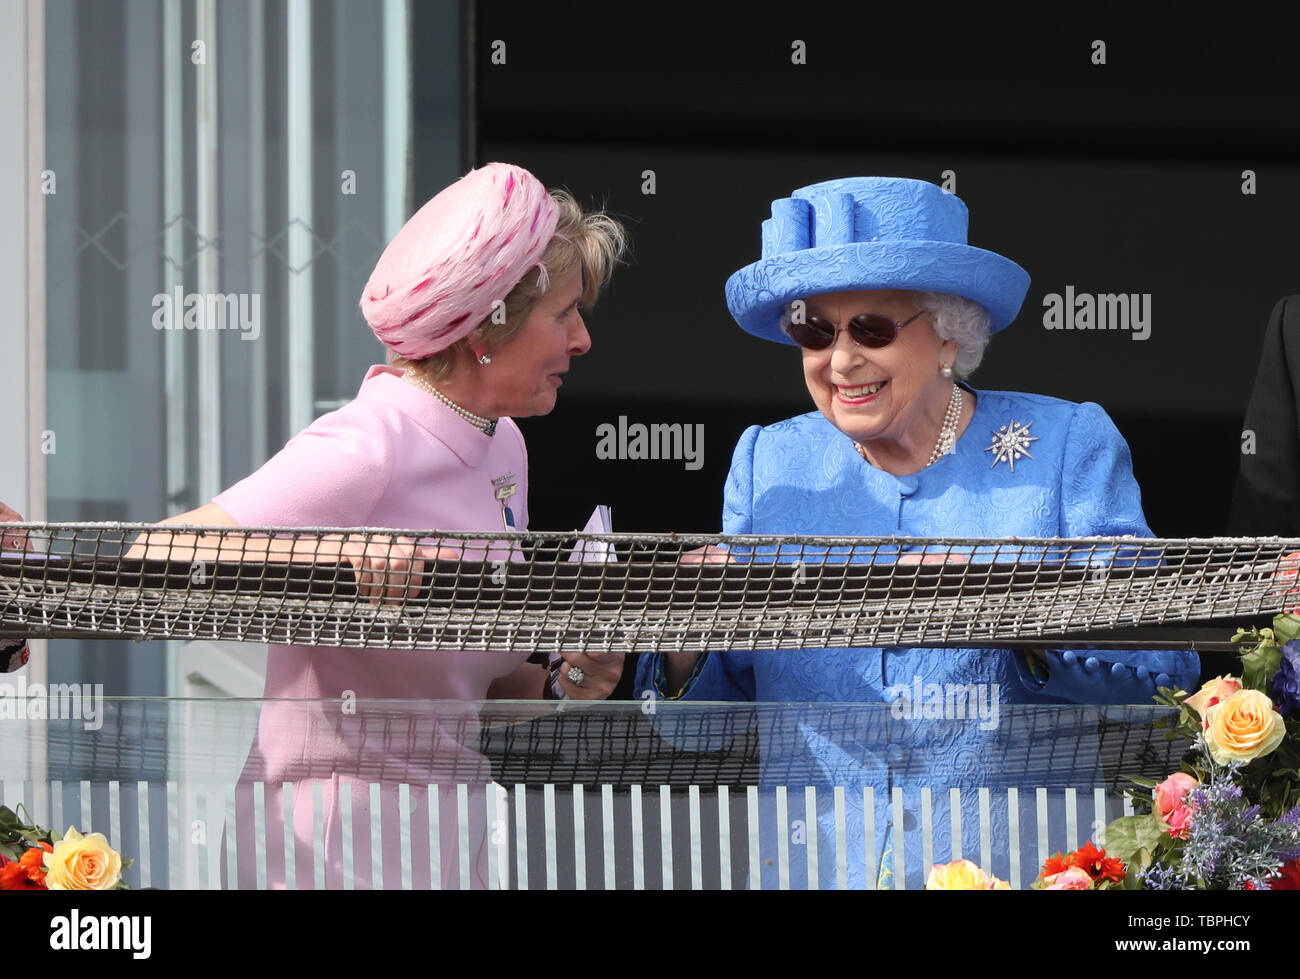 Königin Elizabeth II. ist alles Lächeln, wie sie Uhren der Investec Epsom Derby Pferderennen neben Julia Budd Epsom Rennbahn Vorsitzender, Epsom, Surrey, UK am 1. Juni 2019. Stockfoto